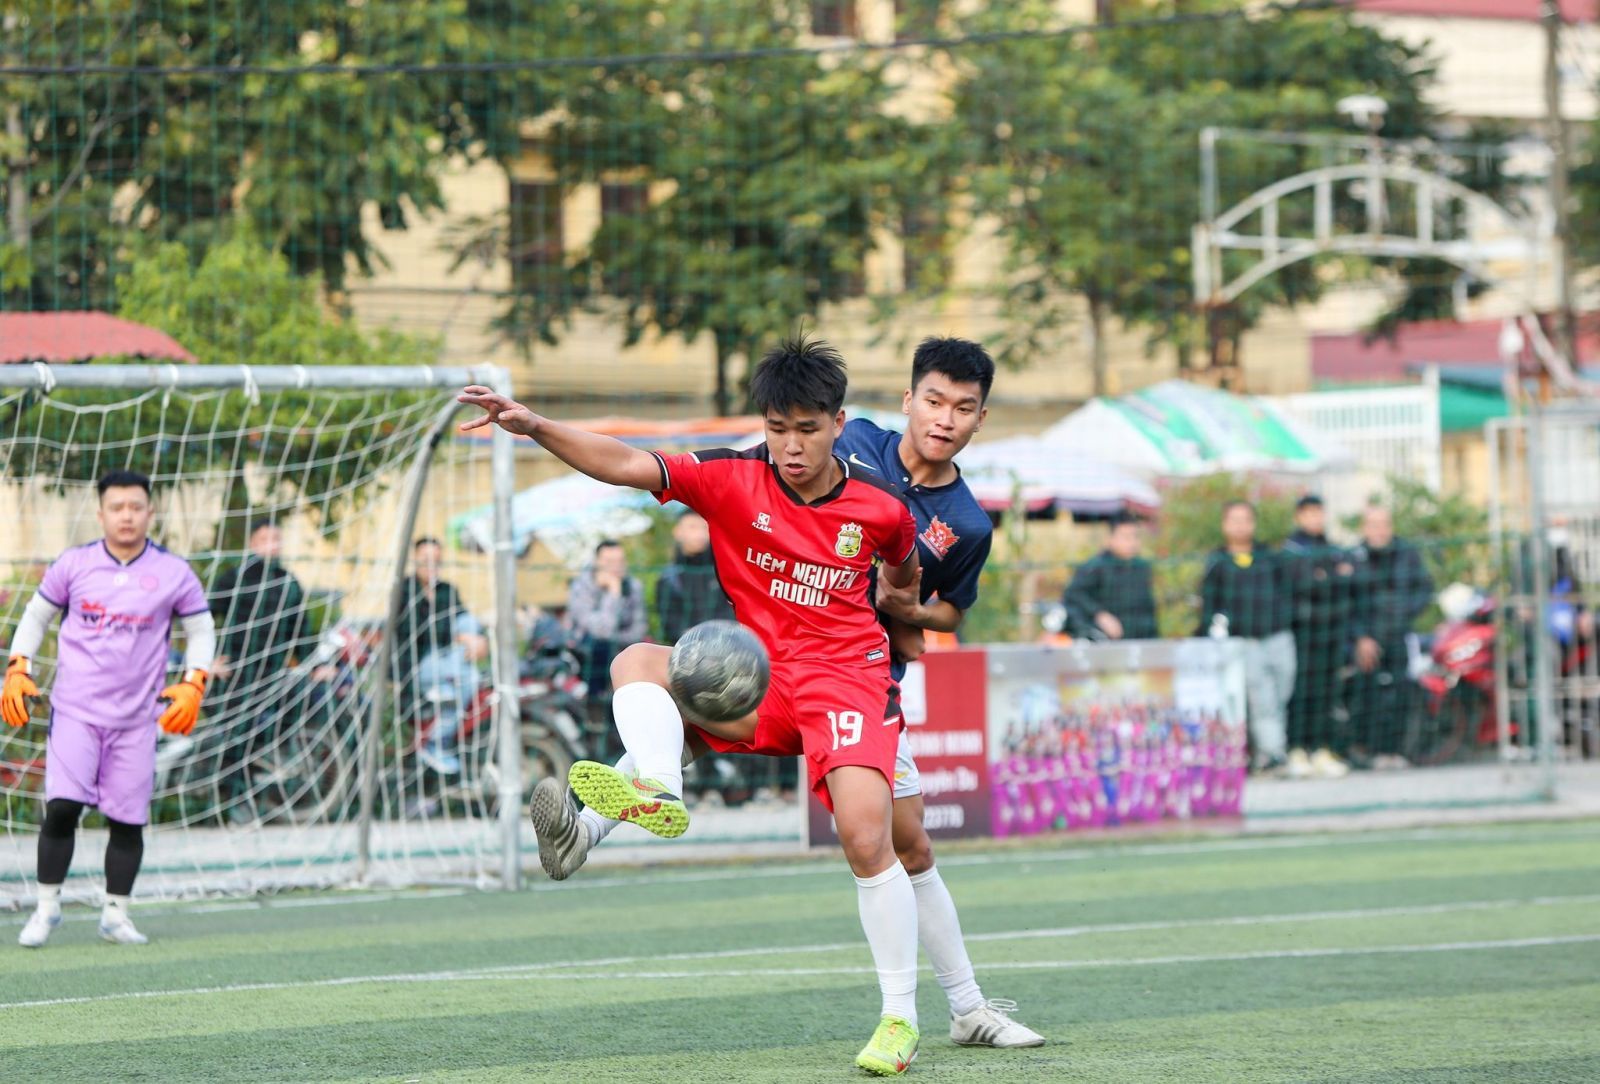 Cầu thủ Tô Viết Công Số (19-áo đỏ) góp công lớn cho FC Ngô Quyền trong trận chung kết gặp FC Heaven